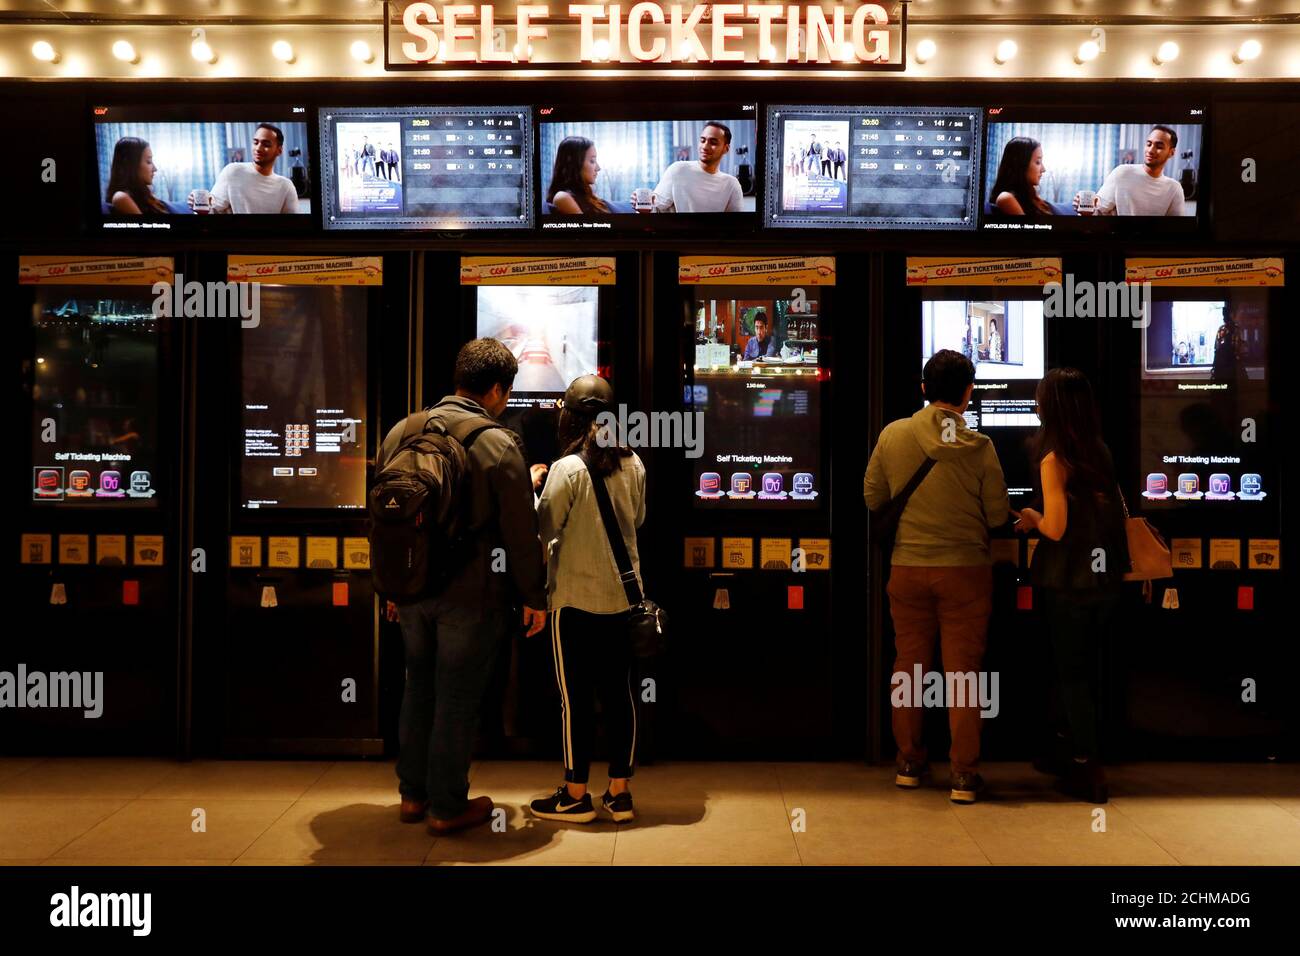 Les couples utilisent des autodistributeurs pour acheter des billets pour regarder des films au CGV Cinemas Cultureplex à Jakarta, Indonésie, le 22 février 2019. Photo prise le 22 février 2019. REUTERS/Willy Kurniawan Banque D'Images